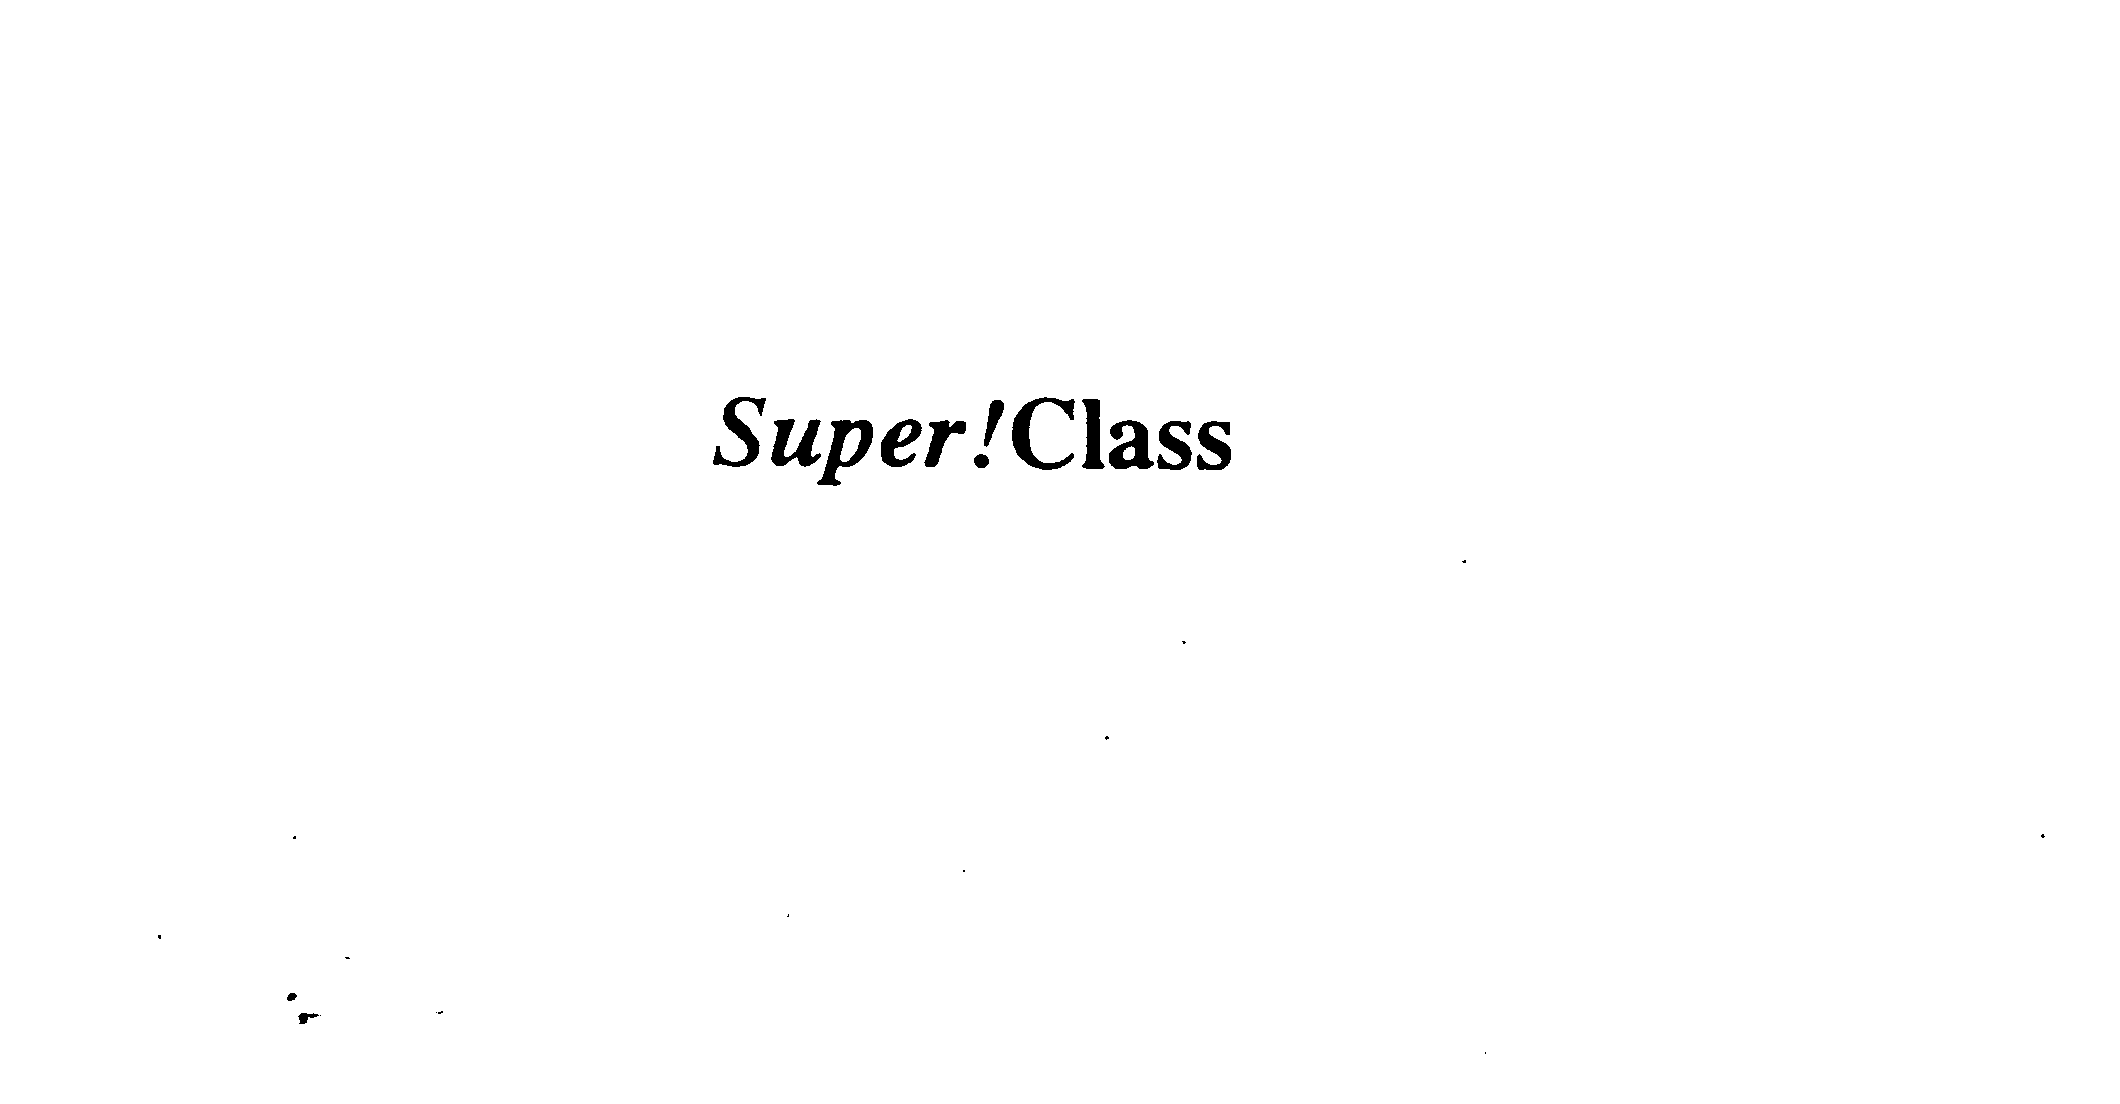  SUPER!CLASS